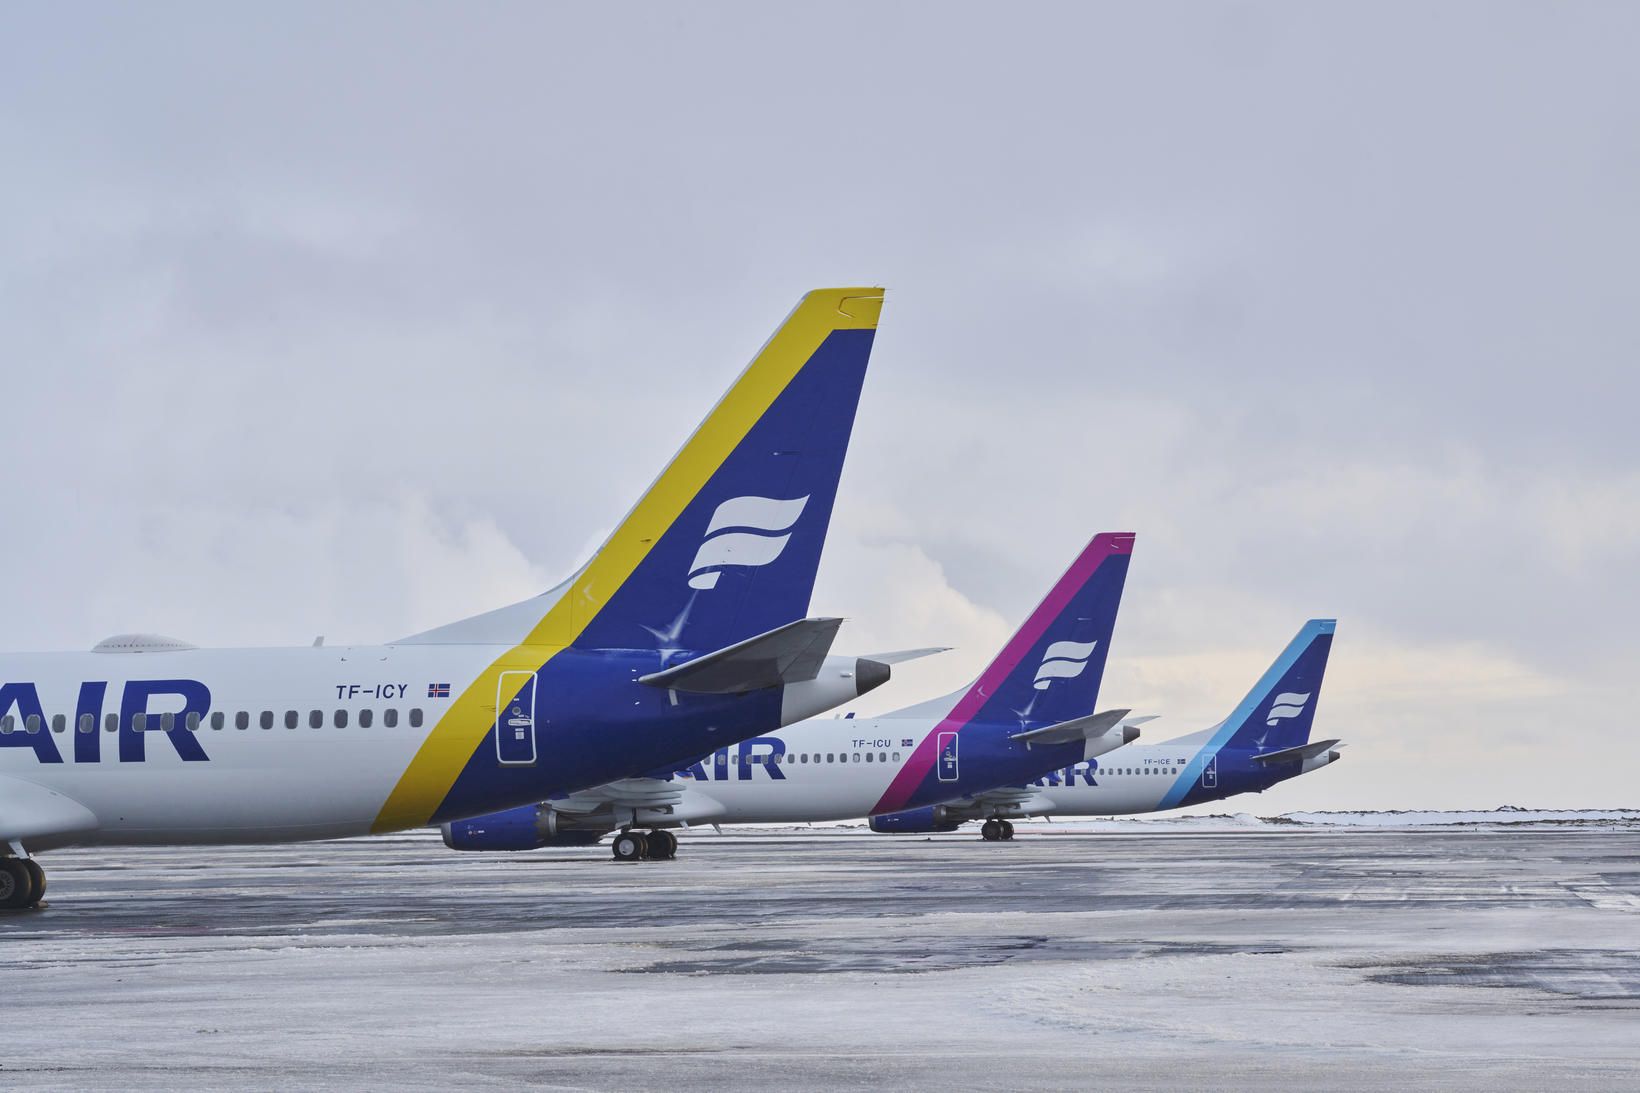 Að sögn upplýsingafulltrúa er Icelandair í samtali við Boeing varðandi …